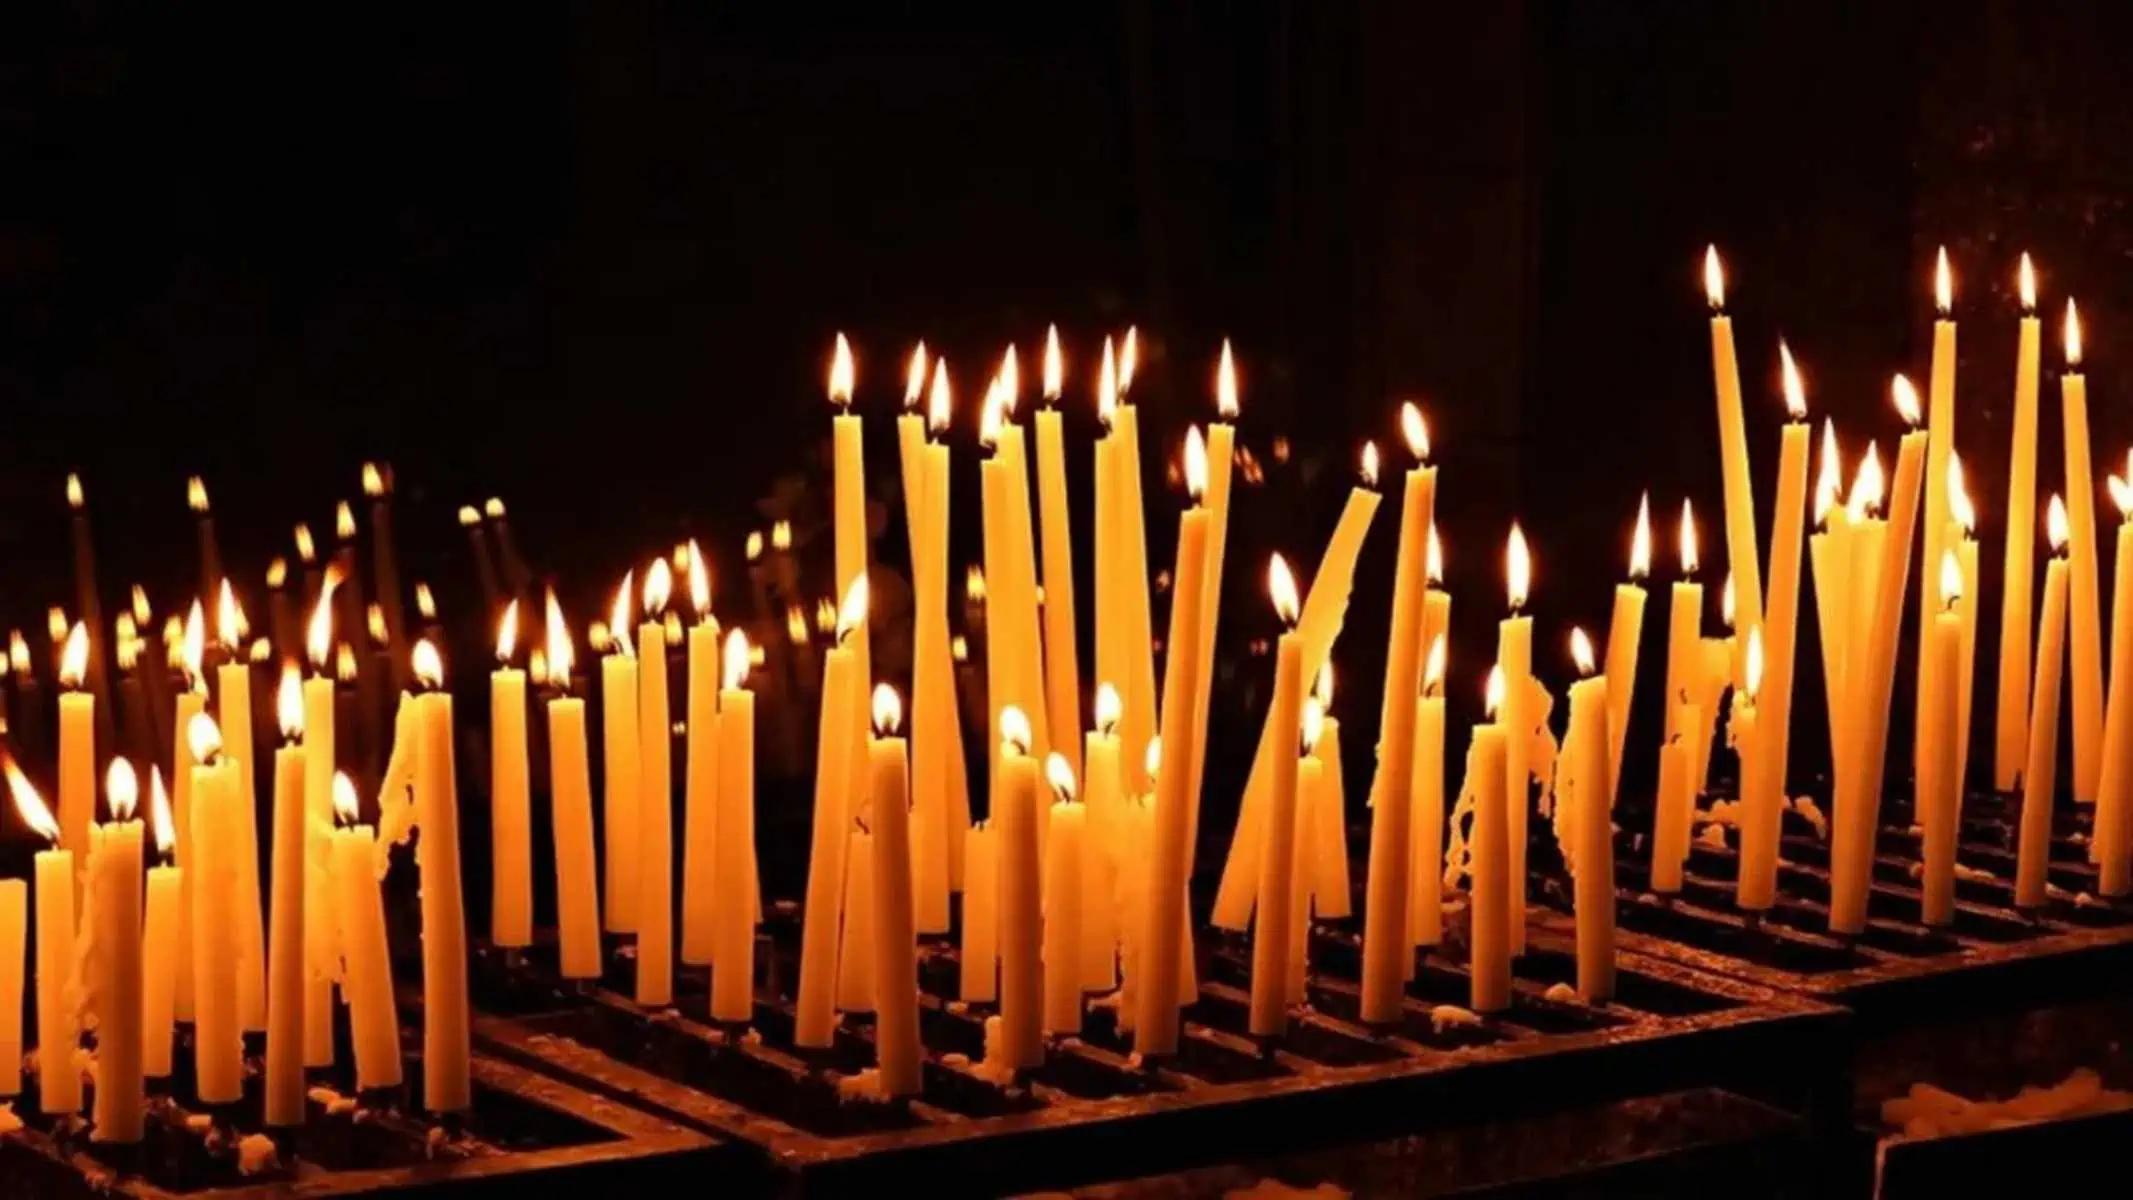 La festa della Candelora, origini e significato storico della festa celebrata il 2 febbraio